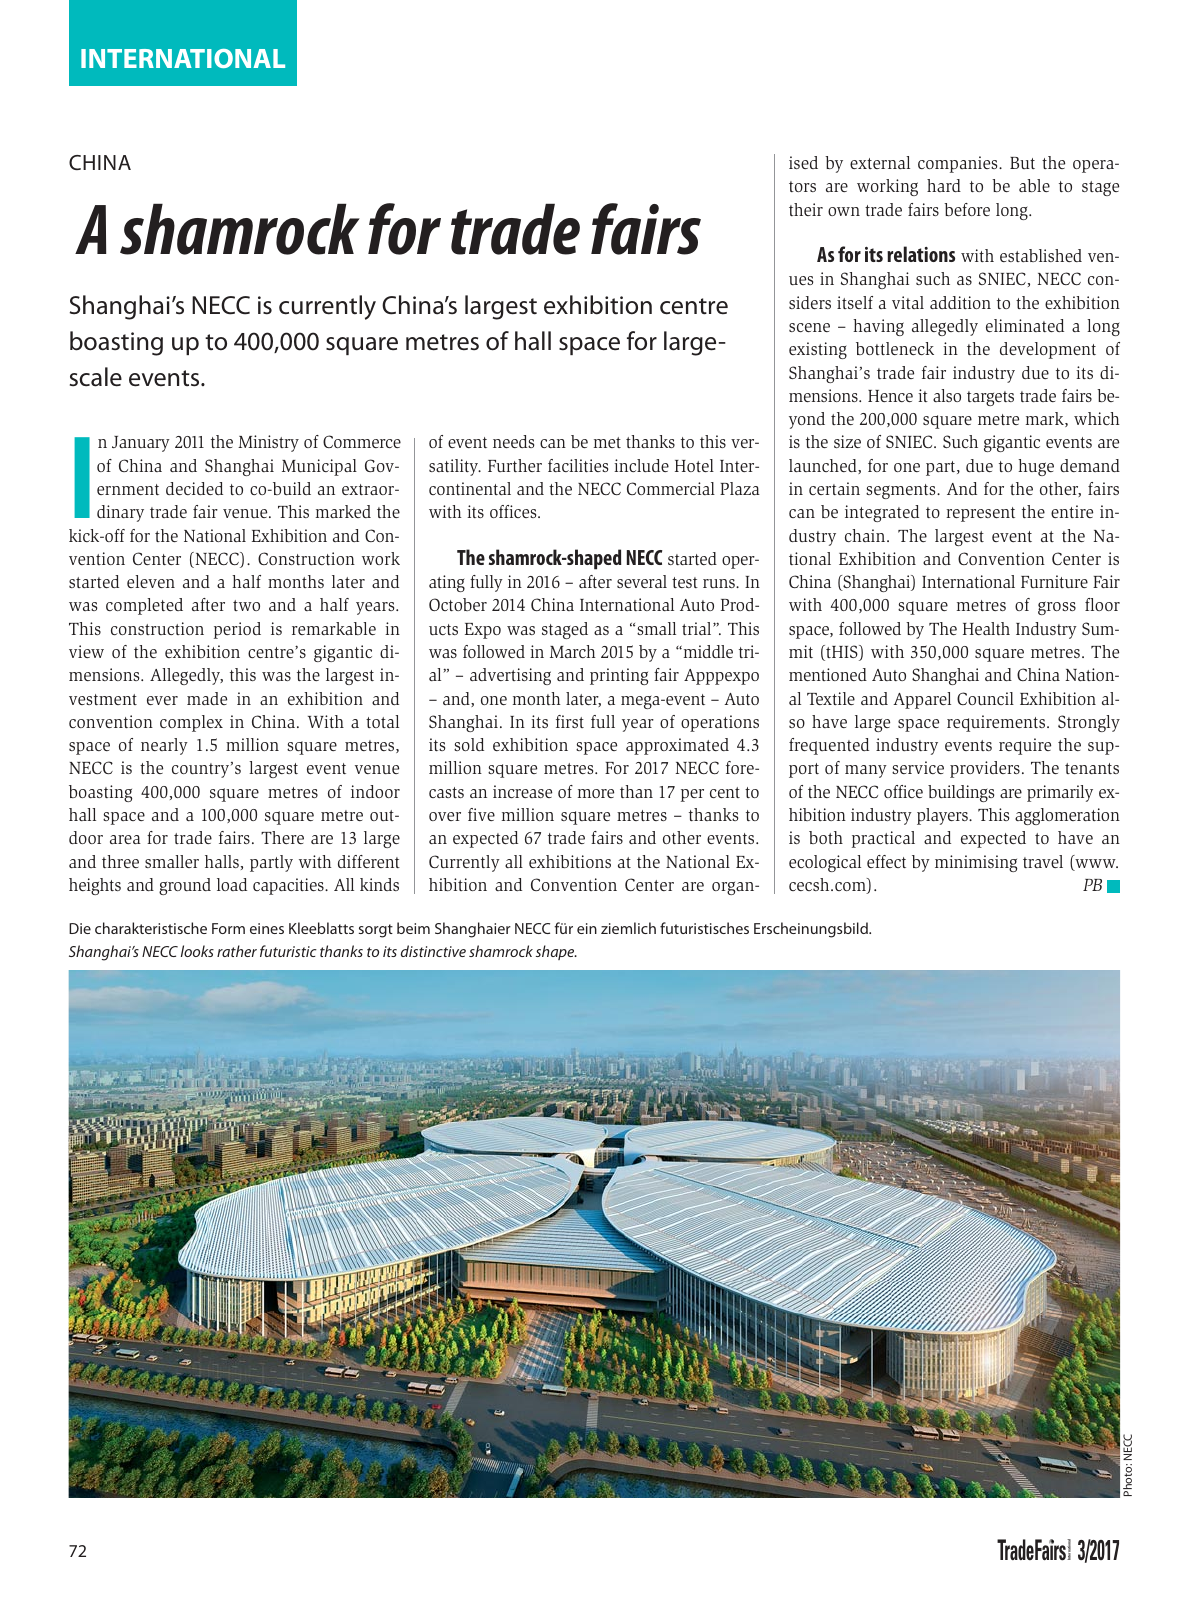 Vorschau TFI Trade-Fairs-International 03/2017 Seite 72